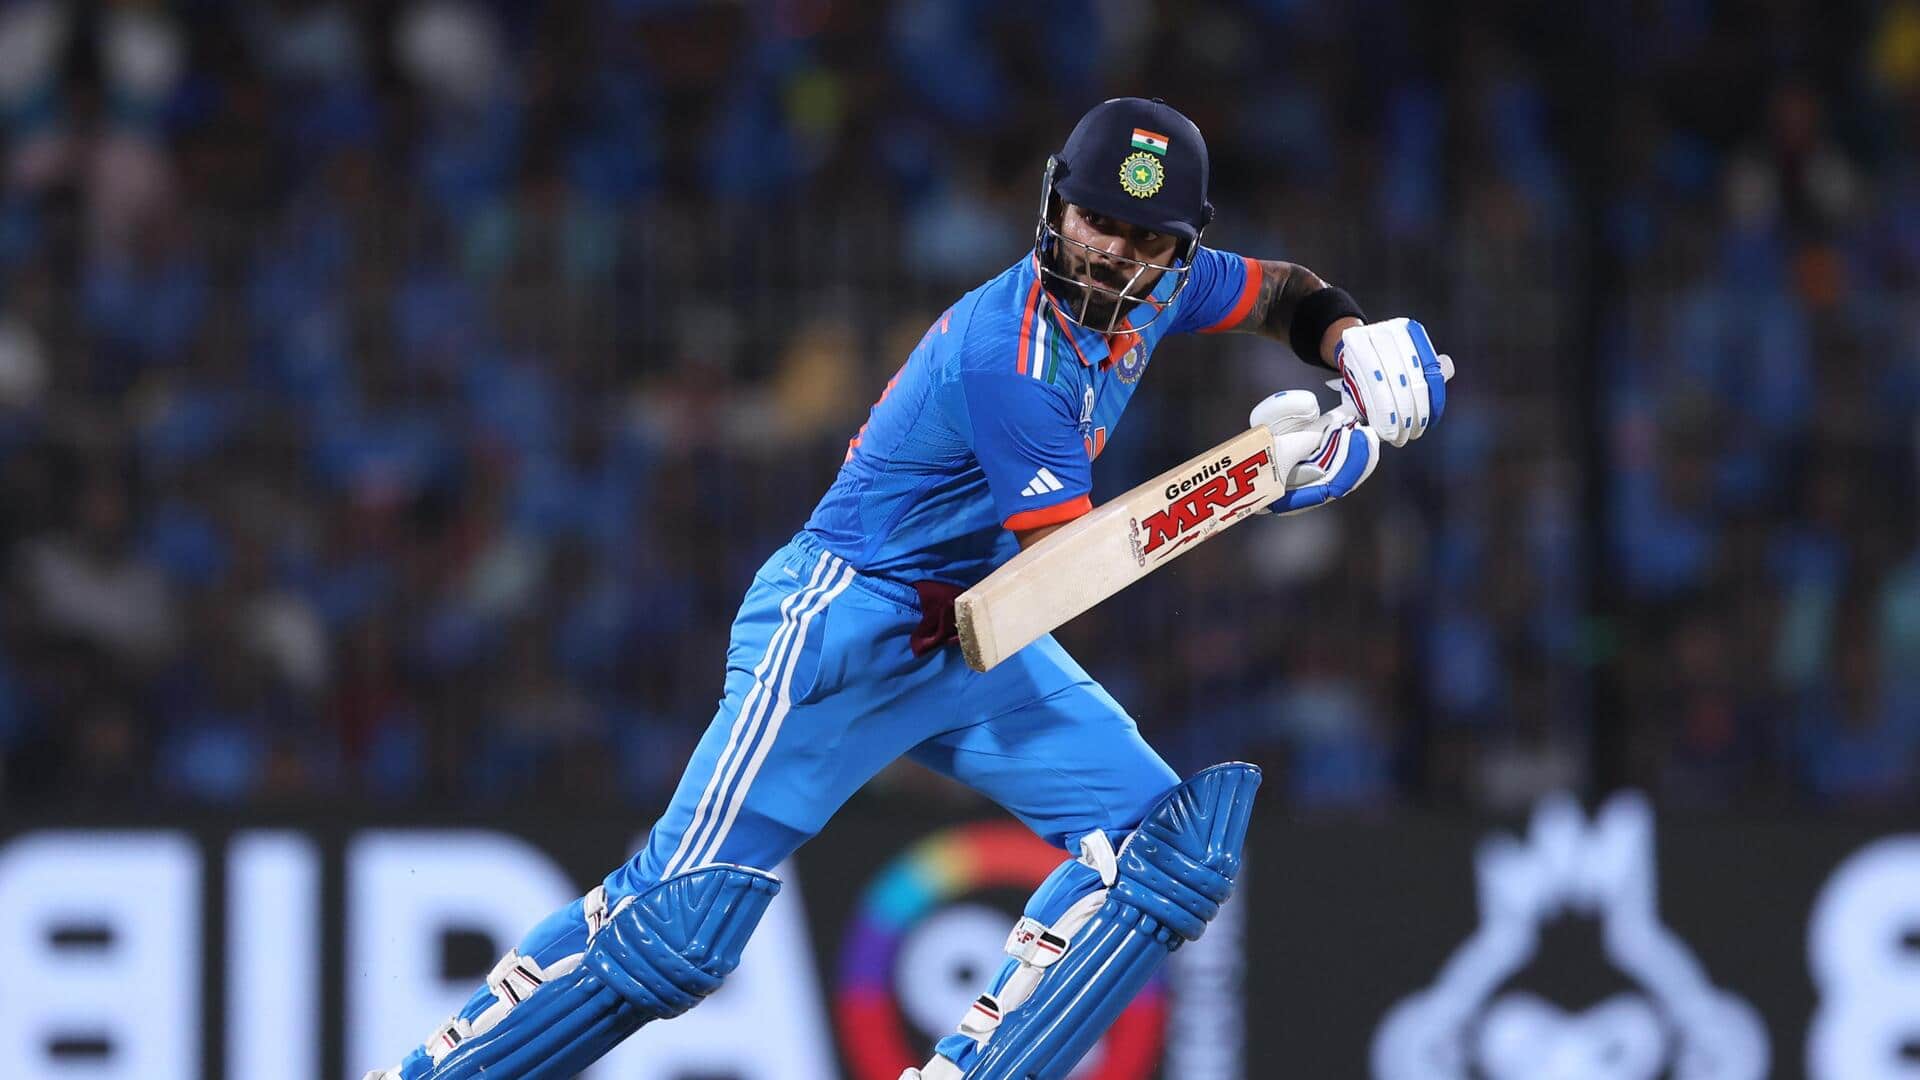 विराट कोहली वनडे और टी-20 प्रारूप की ICC प्रतियोगिताओं में सर्वाधिक रन बनाने वाले भारतीय बने